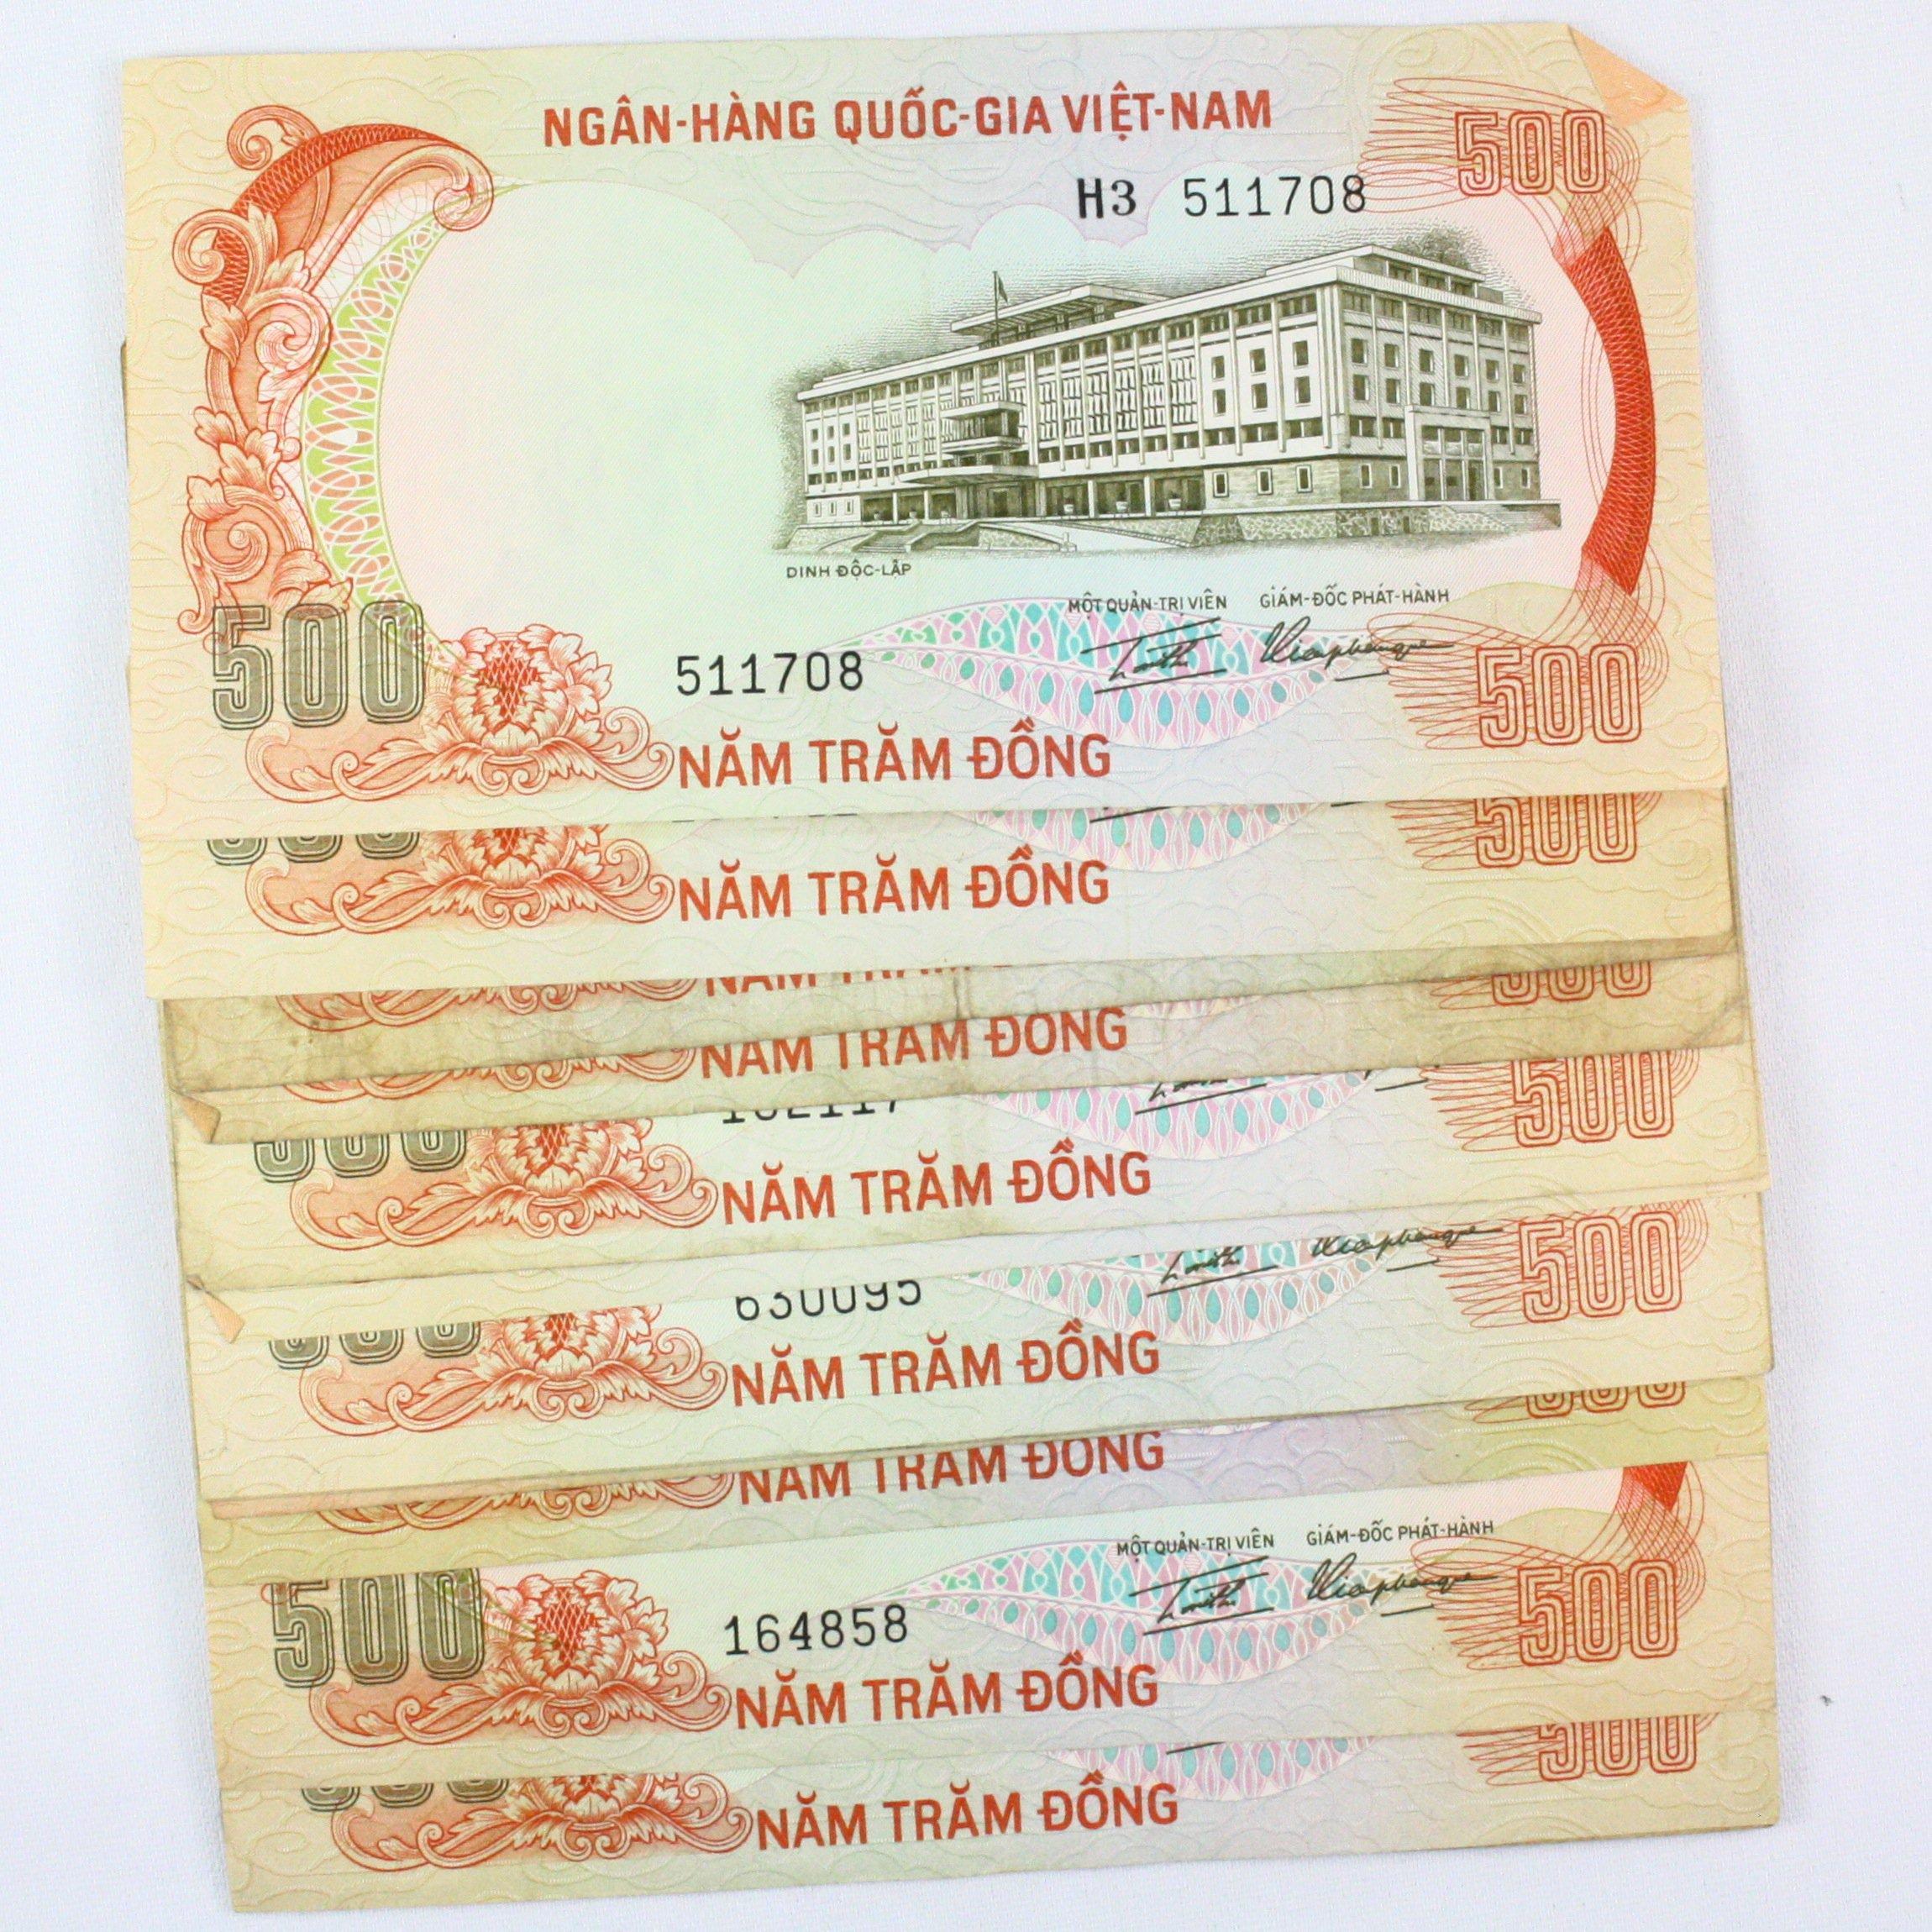 Lot of 25 1972 Vietnam 500 dong banknotes